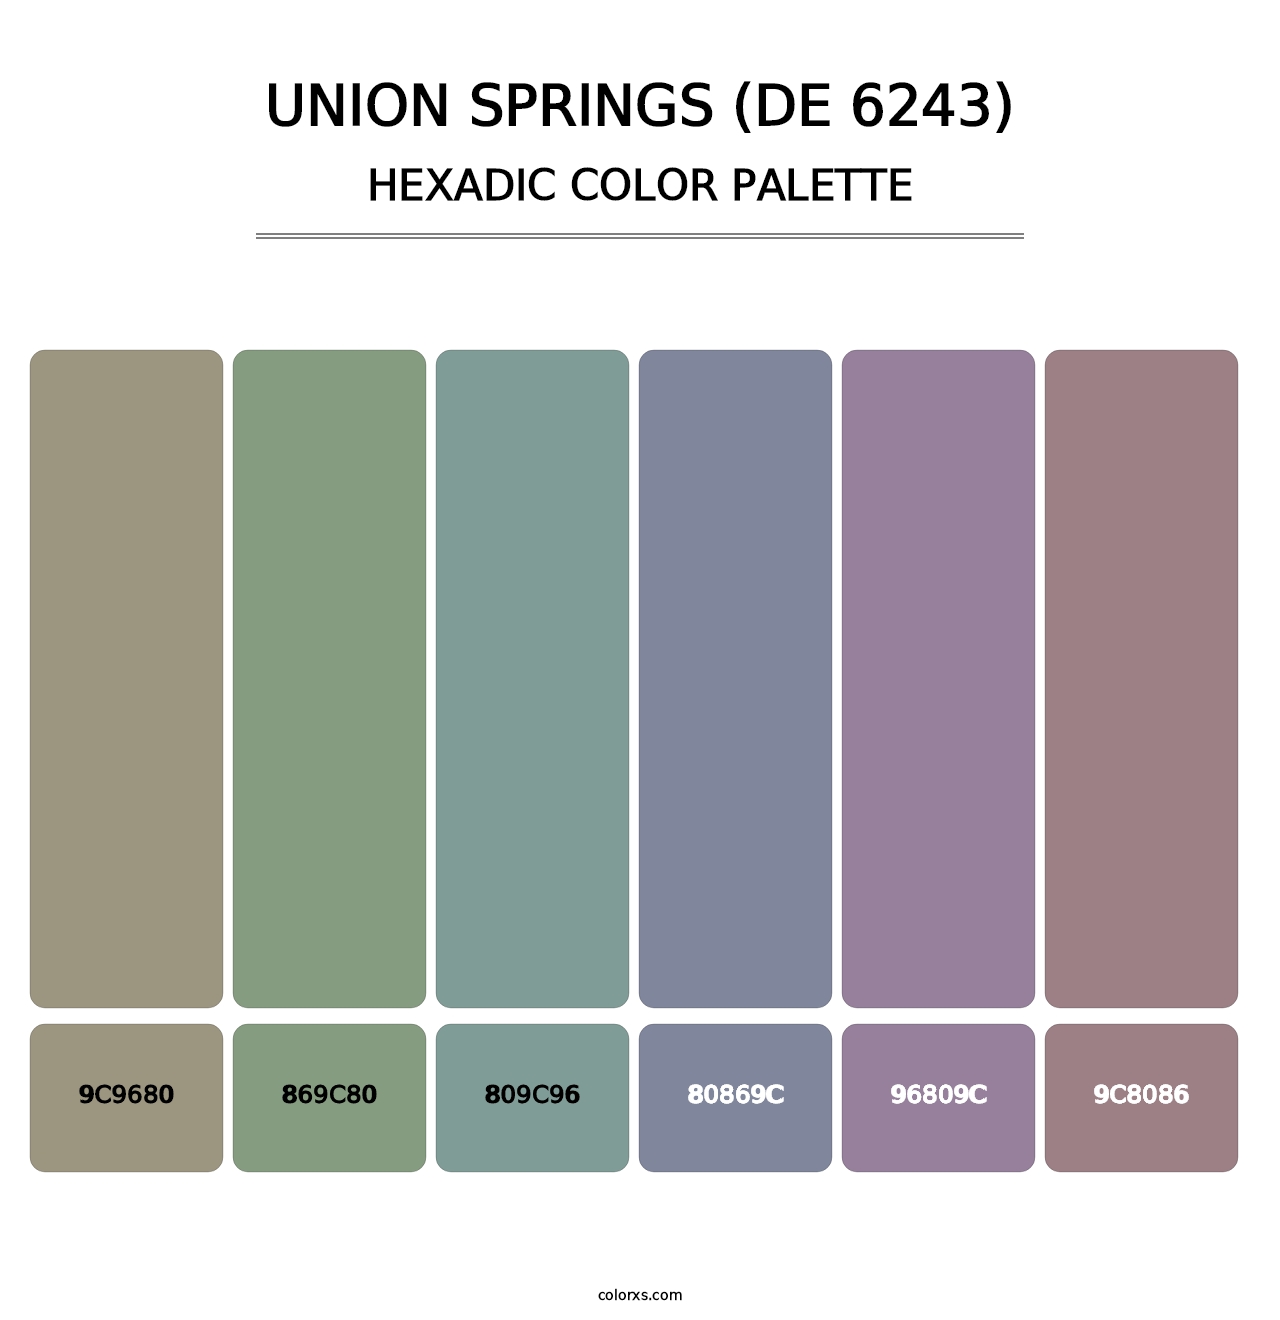 Union Springs (DE 6243) - Hexadic Color Palette